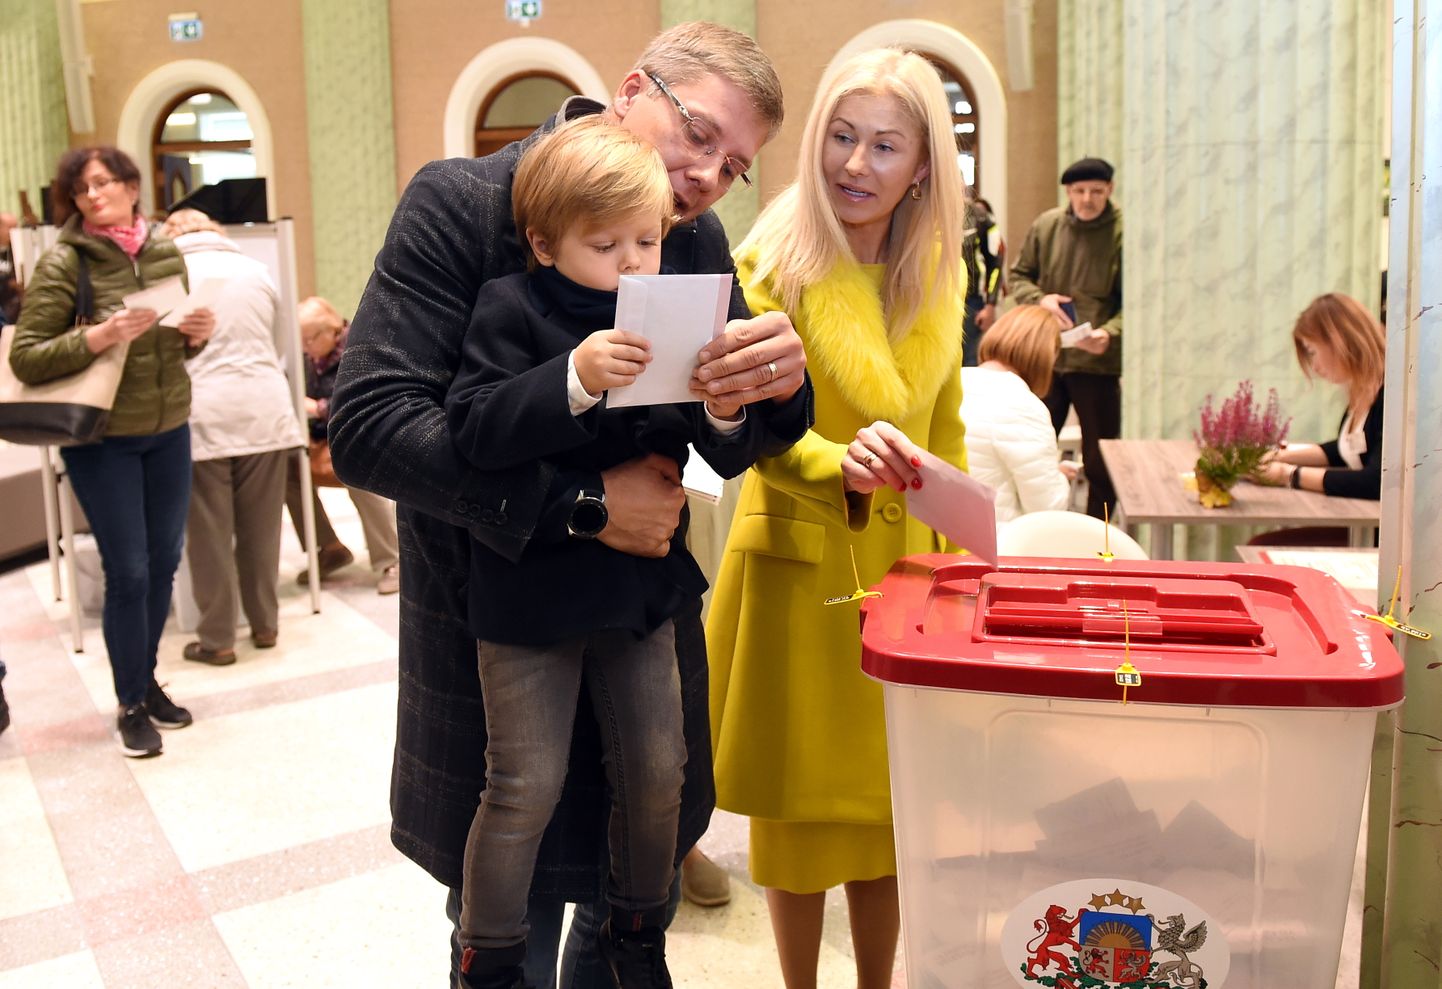 Нил Ушаков вместе с супругой Иветой и сыном Томом голосует на избирательном участке в Доме культуры ВЭФ